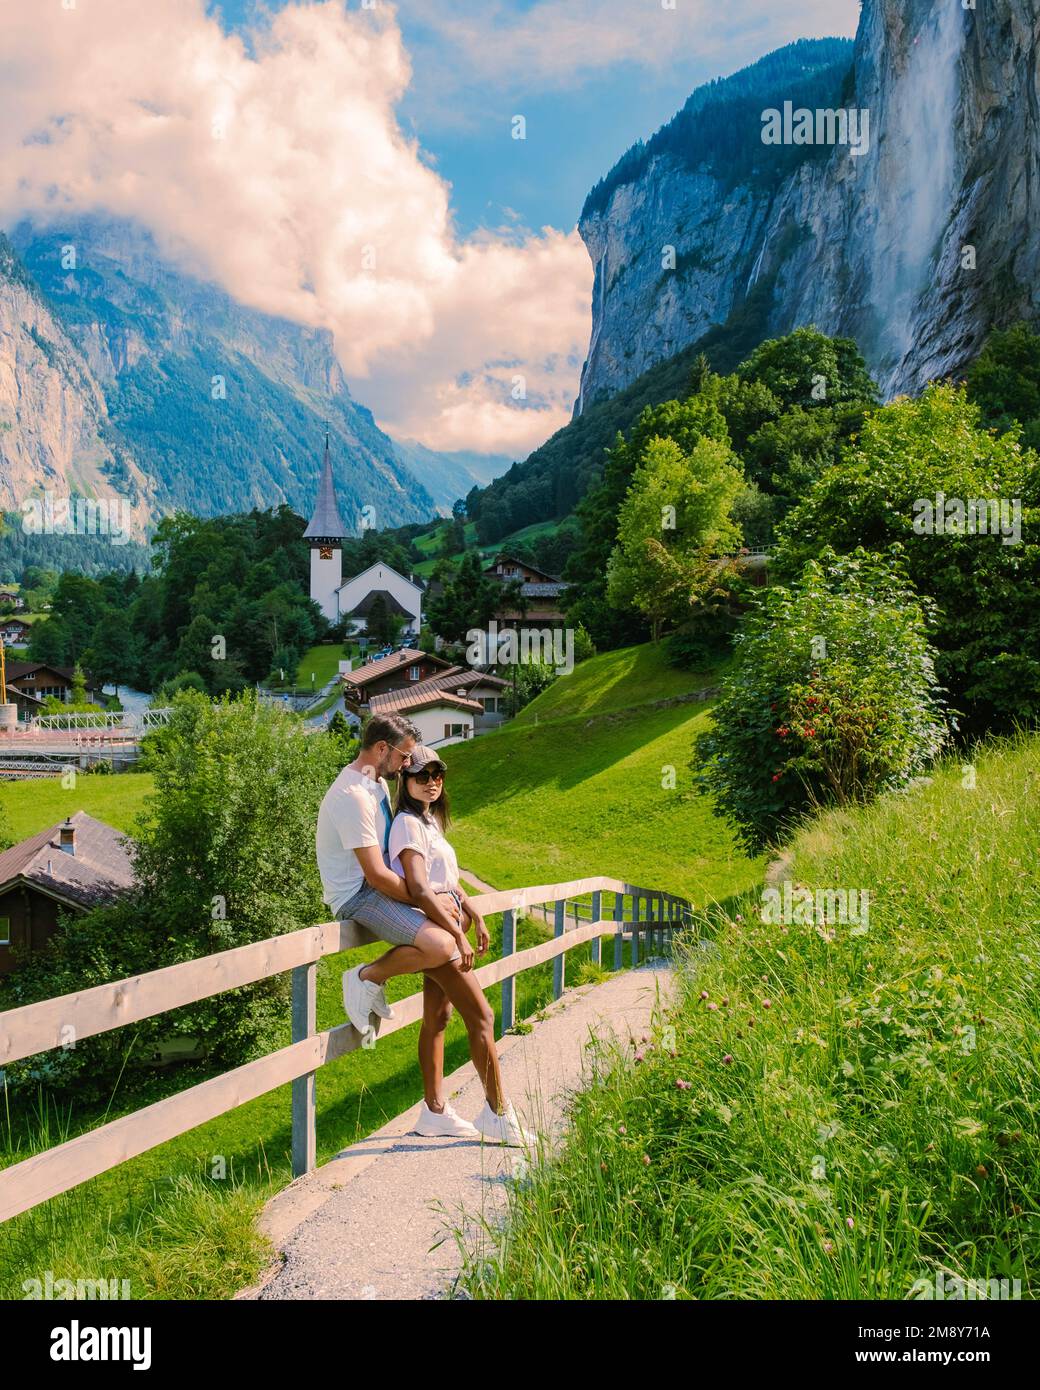 Vallée de Lauterbrunnen, village de Lauterbrunnen, chute de Staubbach et mur de Lauterbrunnen dans les Alpes suisses, Suisse. Europe la vallée de Lauterbrunnen, un couple d'hommes caucasiens et de femmes asiatiques en vacances Banque D'Images